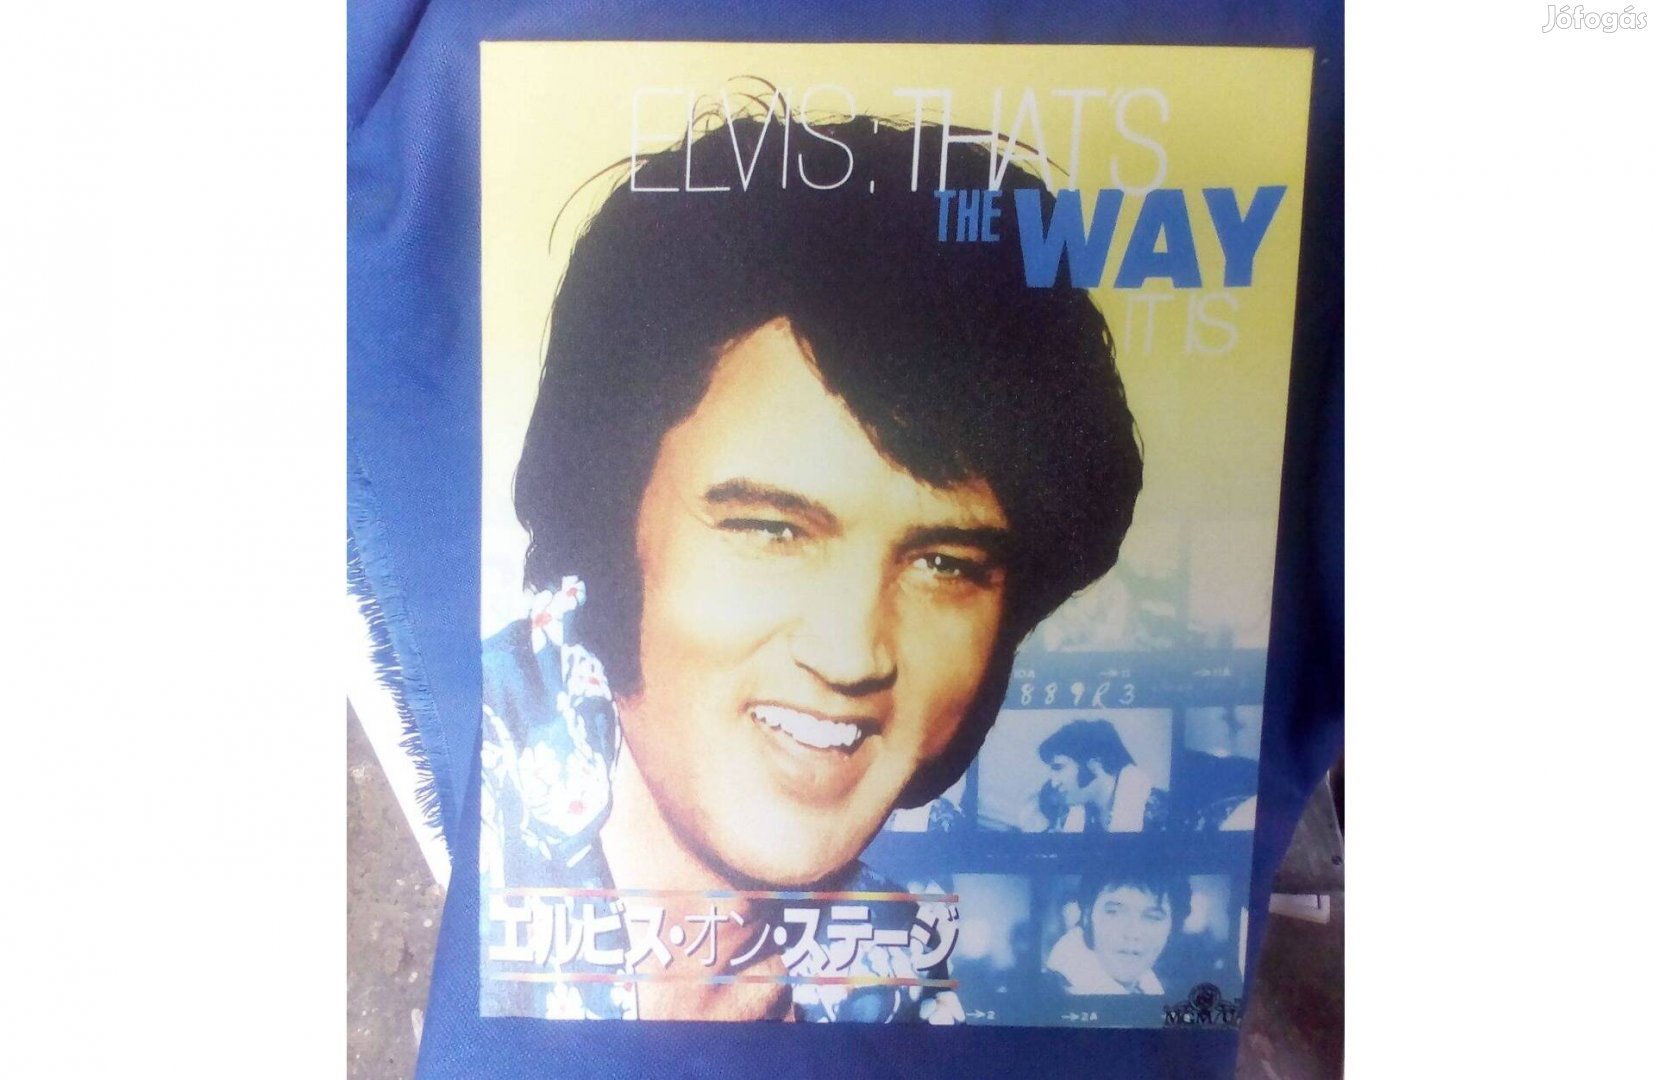 Eladó egyedi Elvis Presley vászon falikép